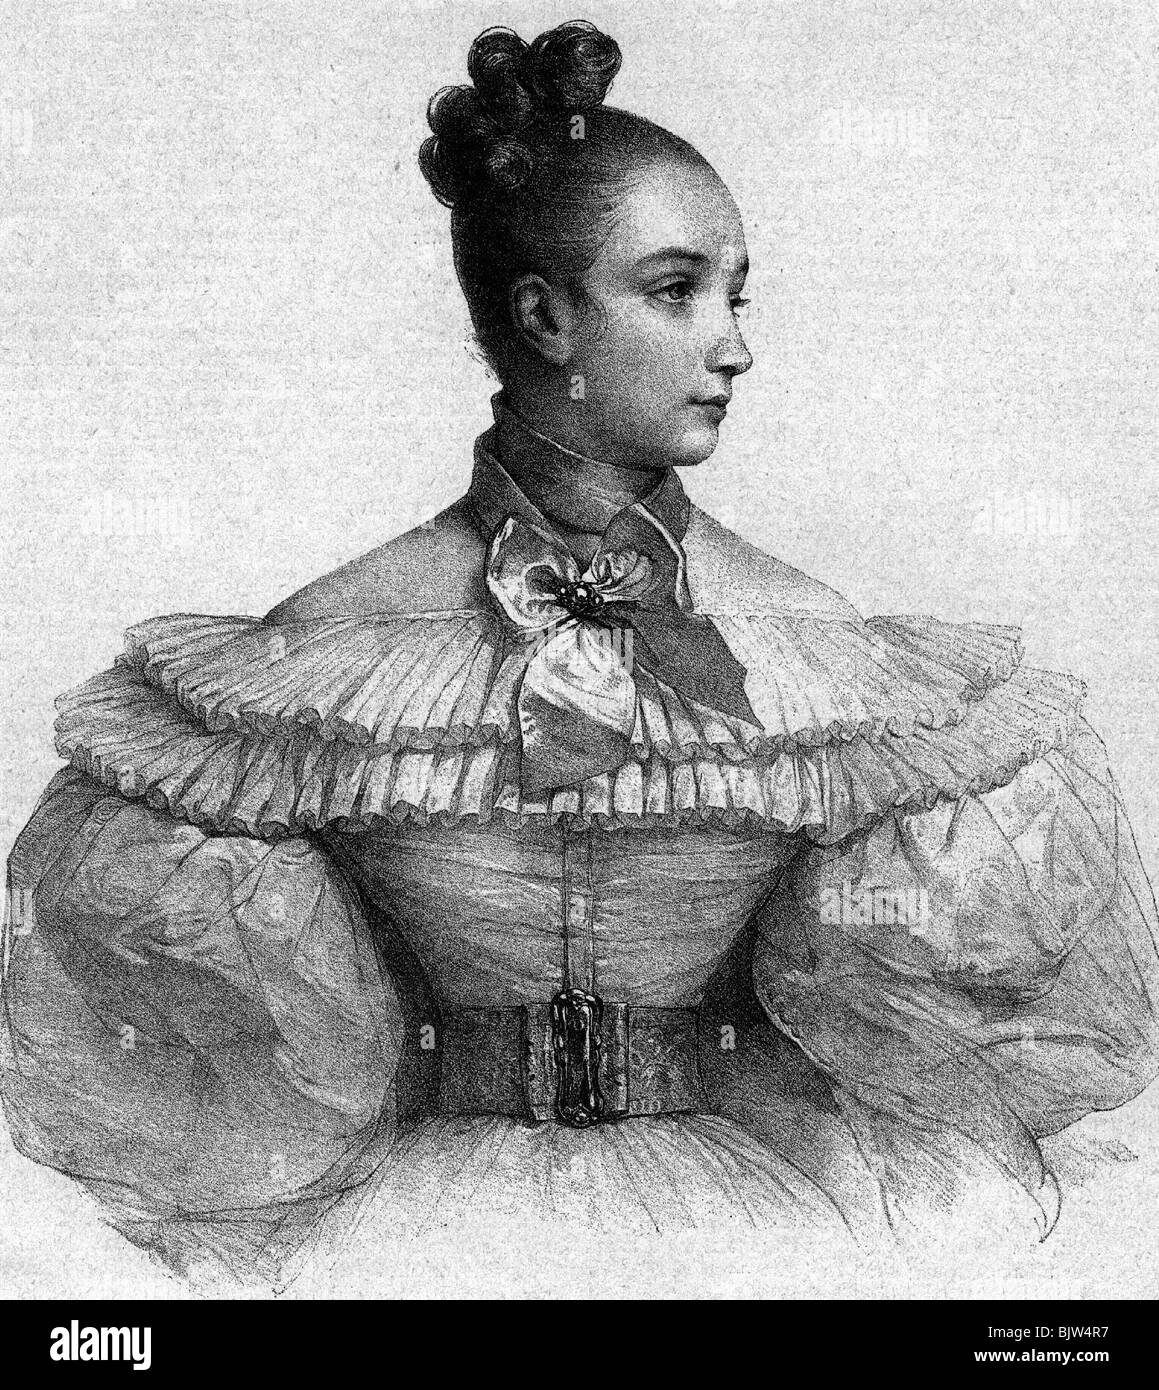 Moda, moda ladie, 19th secolo, abito con manica puffy, incisione in legno, illustrazione 'Frederike' al romanzo 'Aus alter Zeit' (Da tempi antichi), Foto Stock